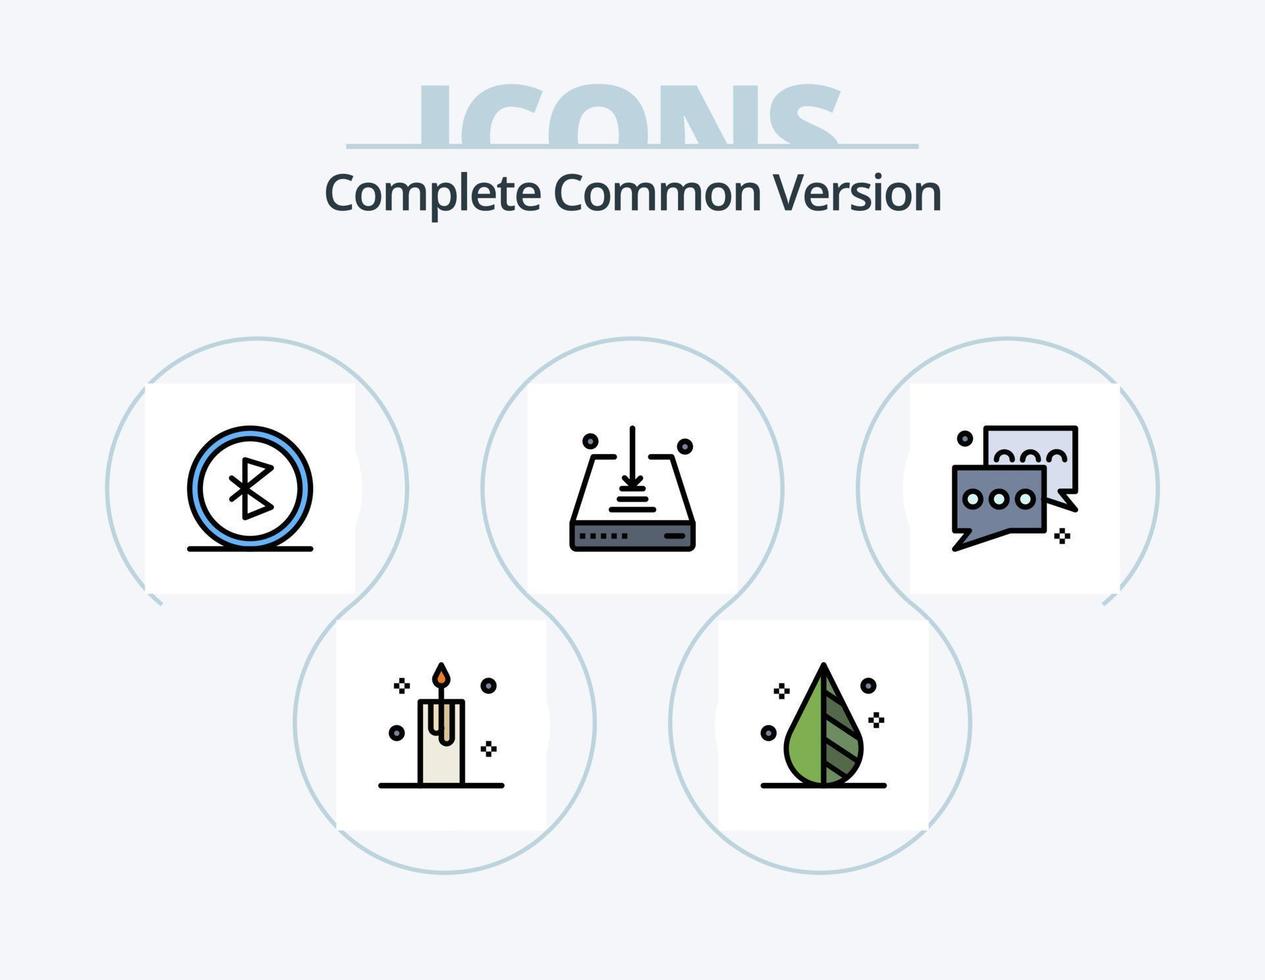 linha de versão comum completa cheia de ícones do pacote 5 design de ícones. relatório. gráfico. navegação. análise. navegação vetor